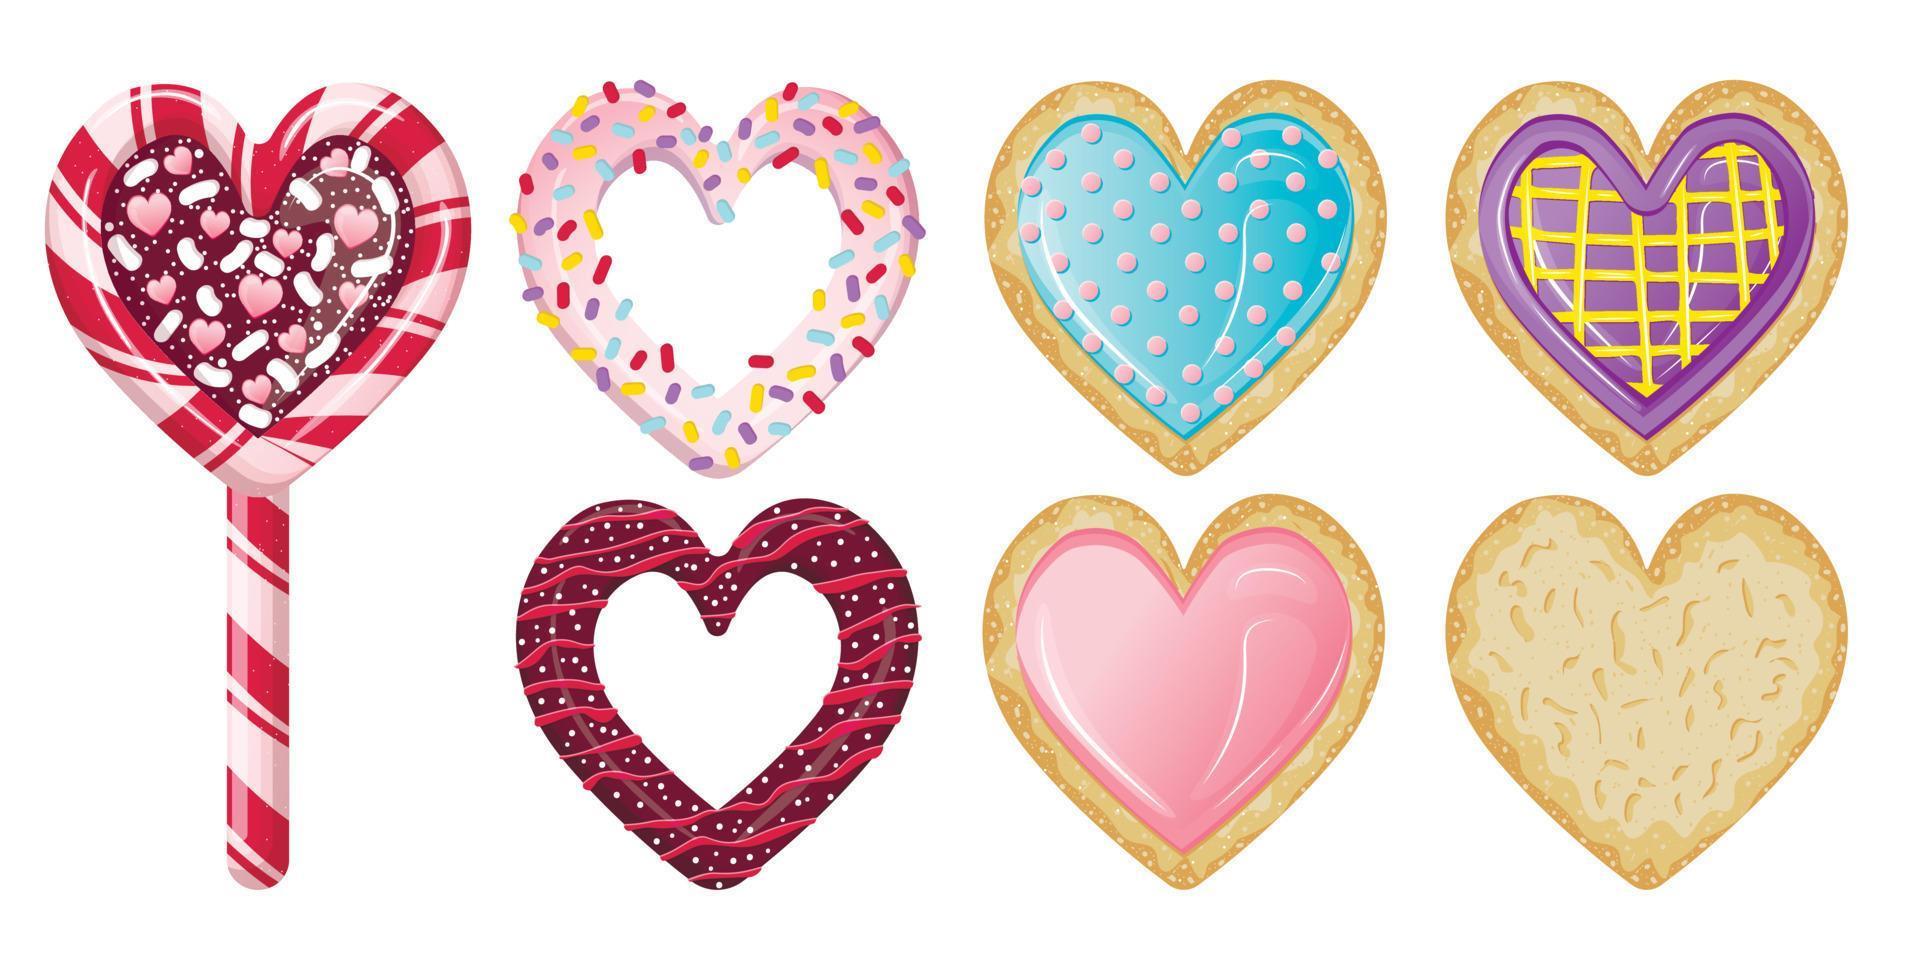 verzameling schattige smakelijke desserts in de vorm van harten voor valentijnsdag. vector